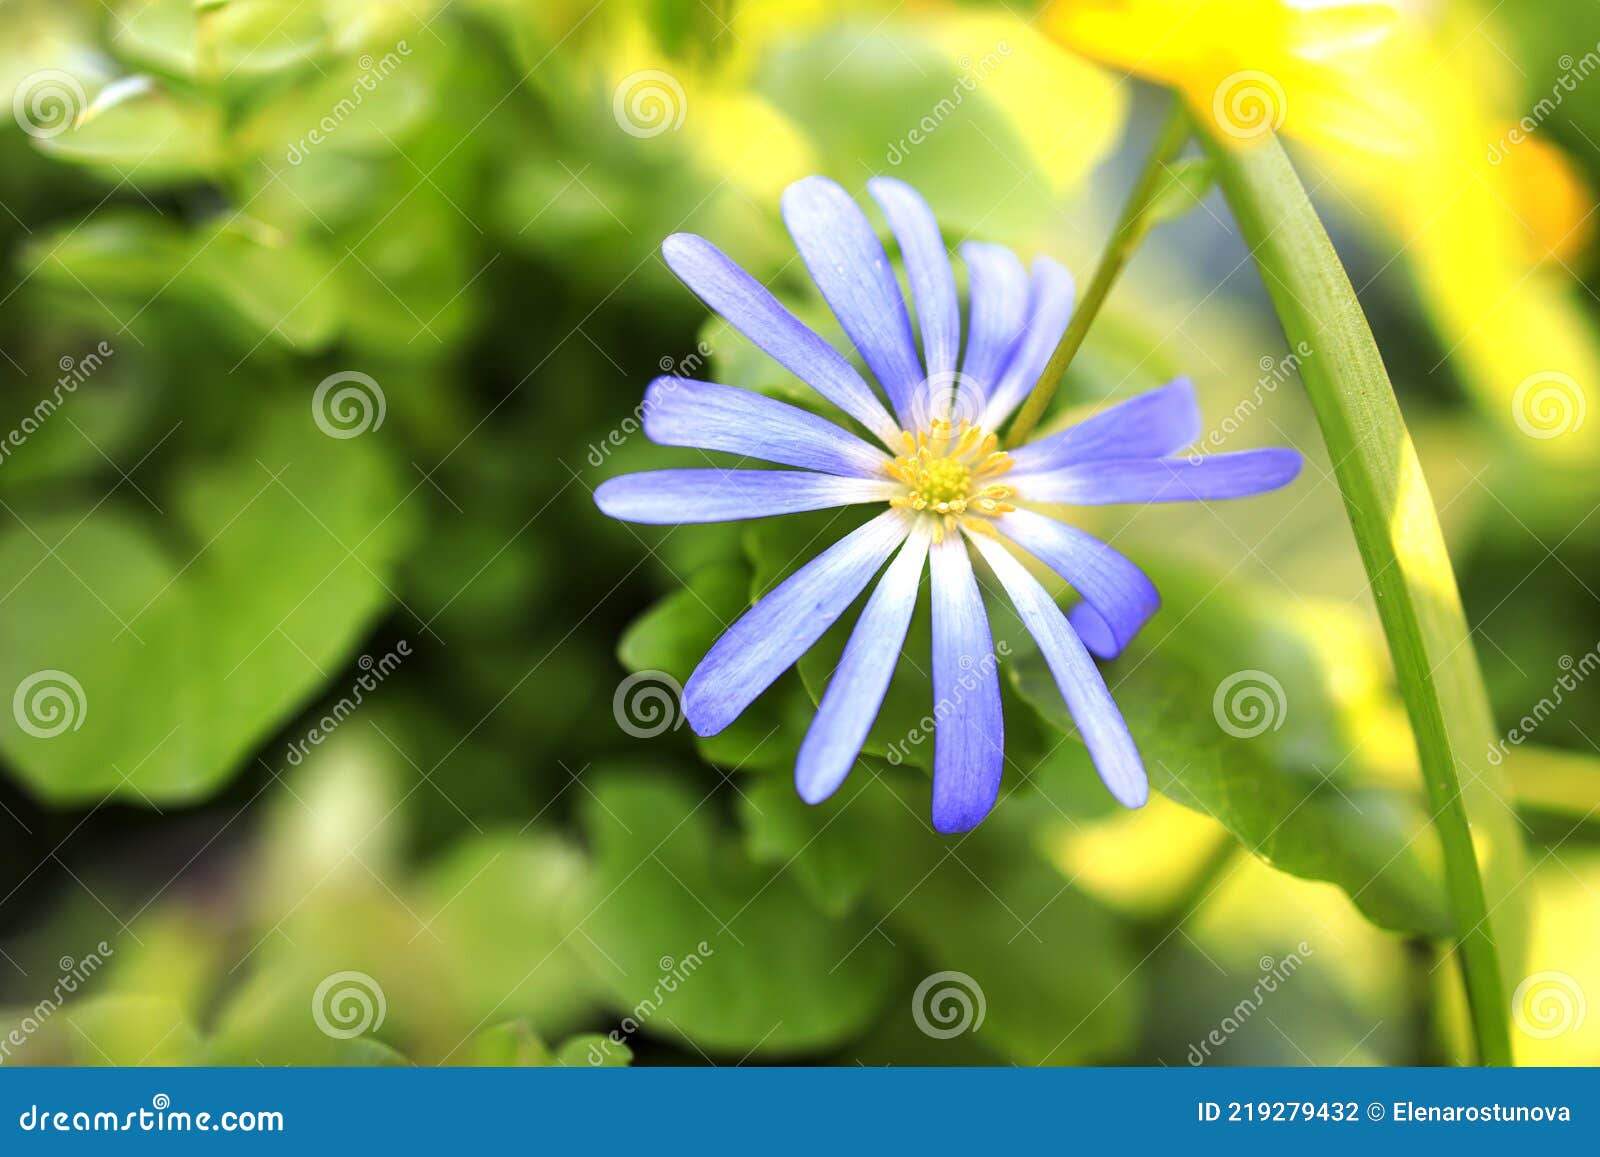 Anemonoides Blanda Syn. Anemone Blanda L'anémone Des Balkans Fleur De Grèce  Ou Fleur De Vent D'hiver Est Une Espèce De Floraison Photo stock - Image du  centrale, bleu: 219279432